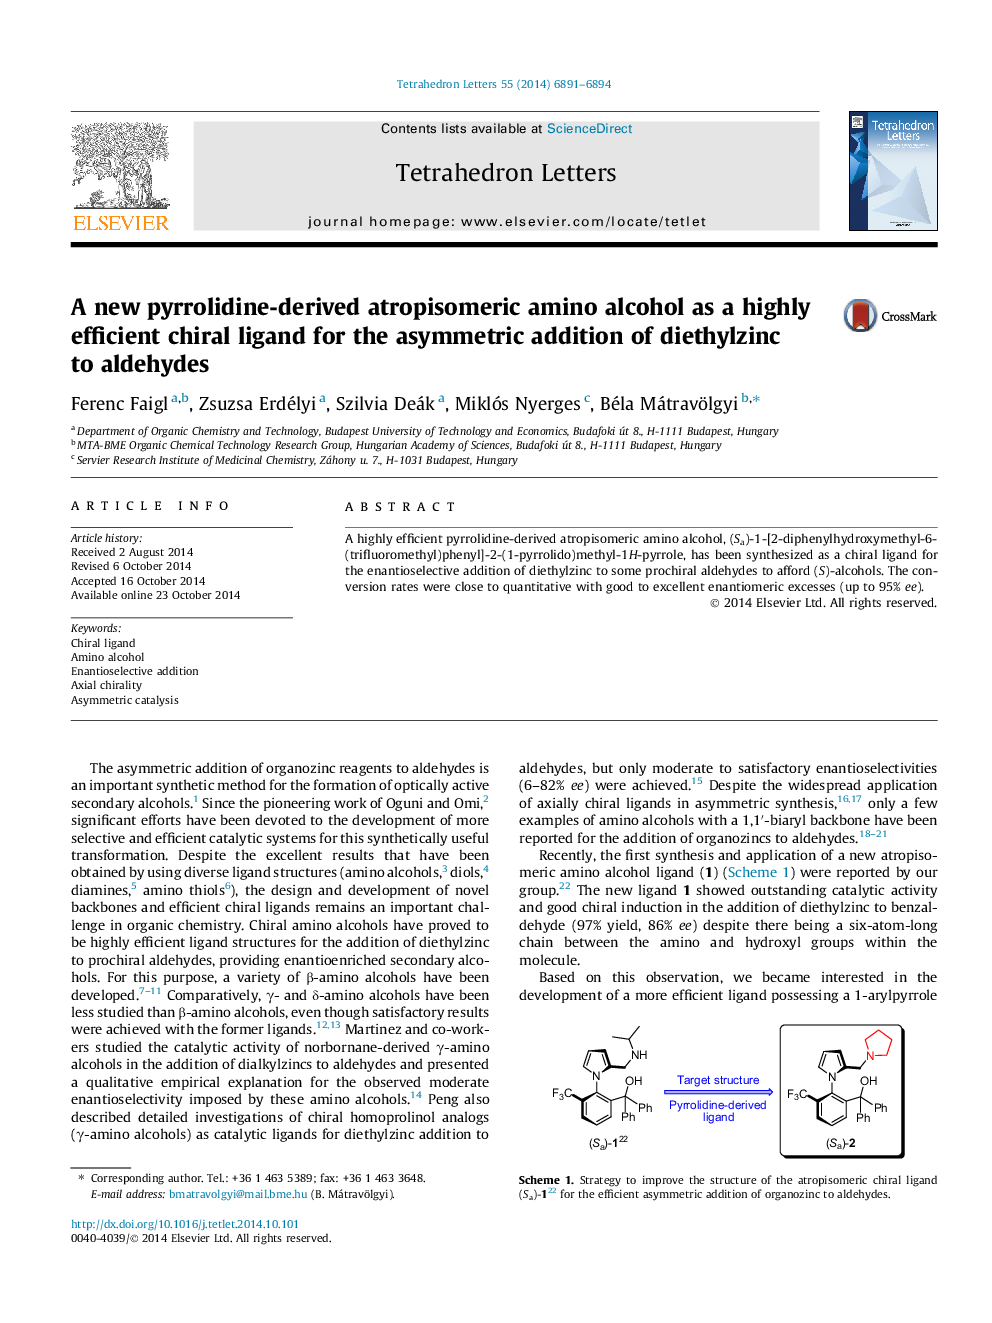 یک آمینو الکل آمپروپیزومریکی جدید از پیرولیدین به عنوان یک لیگاند کایروانی بسیار کارآمد برای افزودن نامتقارن از ریتولینز به آلدئیدها 